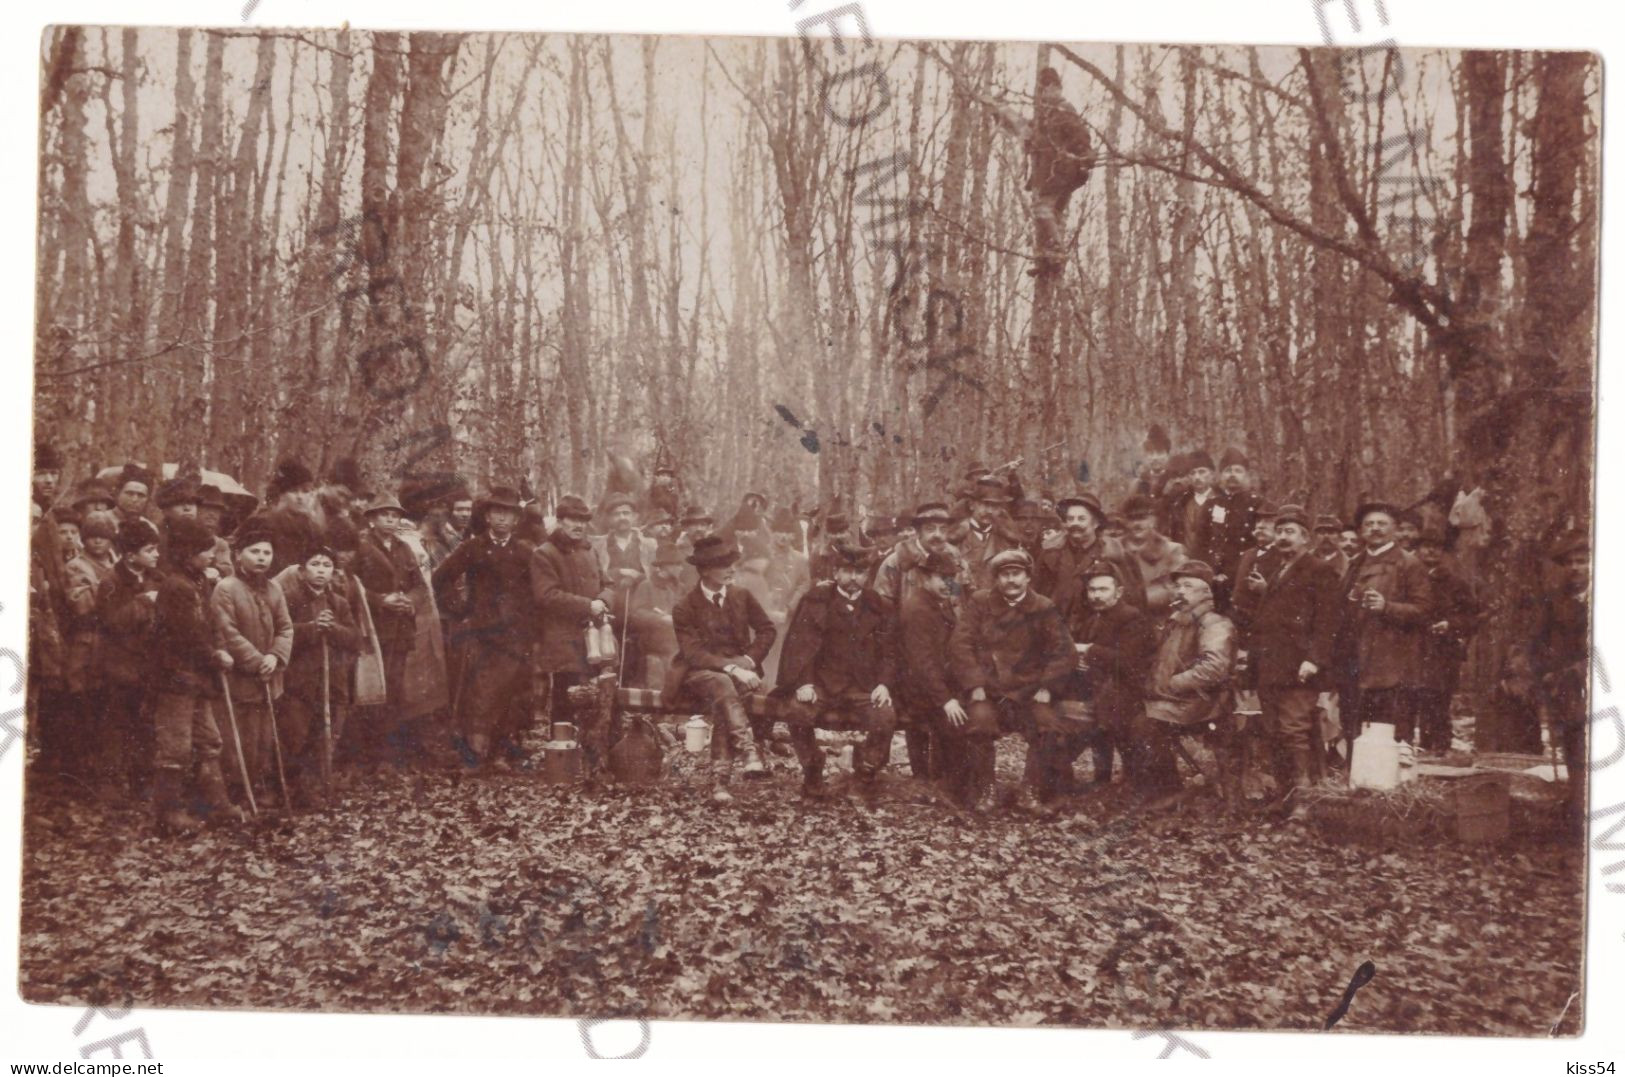 RO 86 - 16746 ORADEA, Hunting, Vanatoare, Romania - Old Postcard, Real PHOTO - Used - 1913 - Roemenië